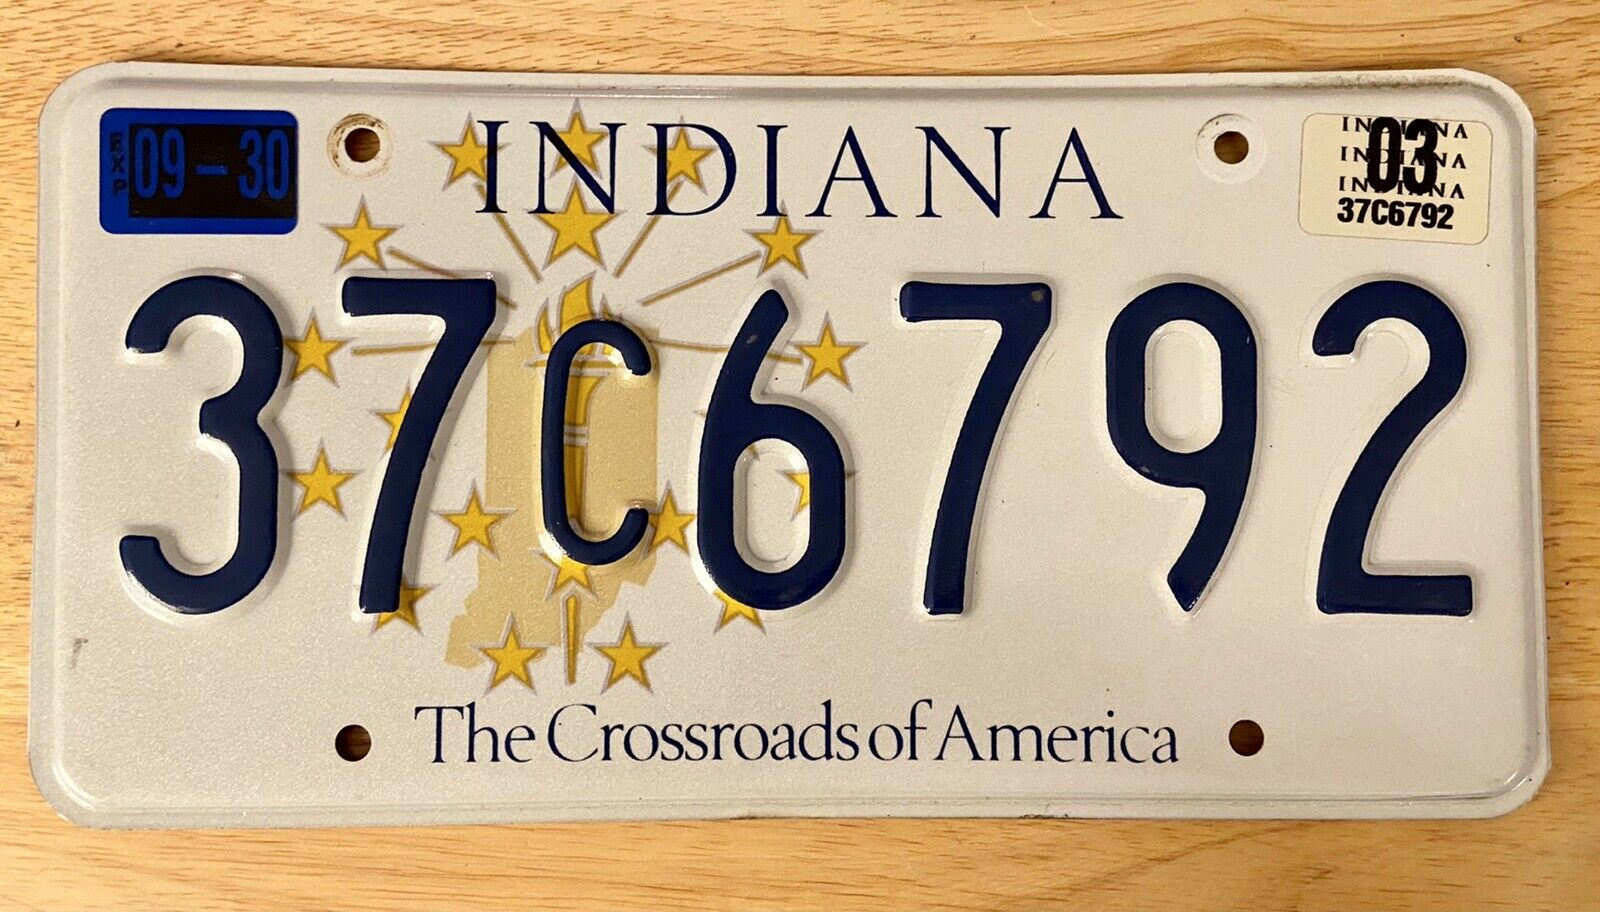 Indiana Car Auto License Plate 37C6792, Crossroads Of America, embossed aluminum